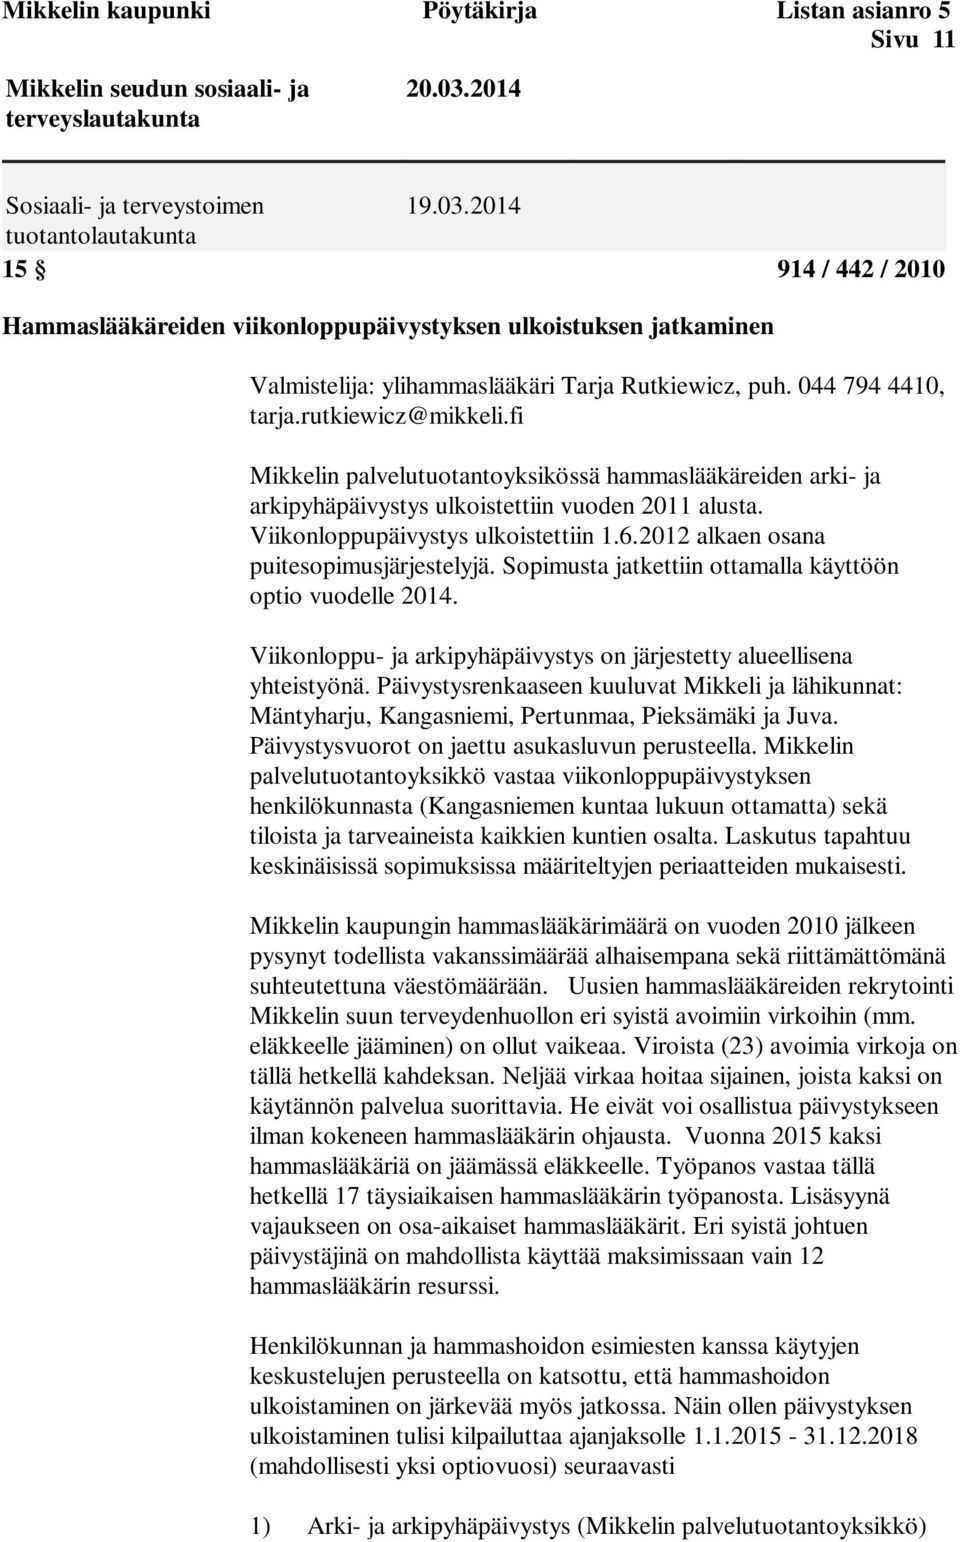 2014 tuotantolautakunta 15 914 / 442 / 2010 Hammaslääkäreiden viikonloppupäivystyksen ulkoistuksen jatkaminen Valmistelija: ylihammaslääkäri Tarja Rutkiewicz, puh. 044 794 4410, tarja.